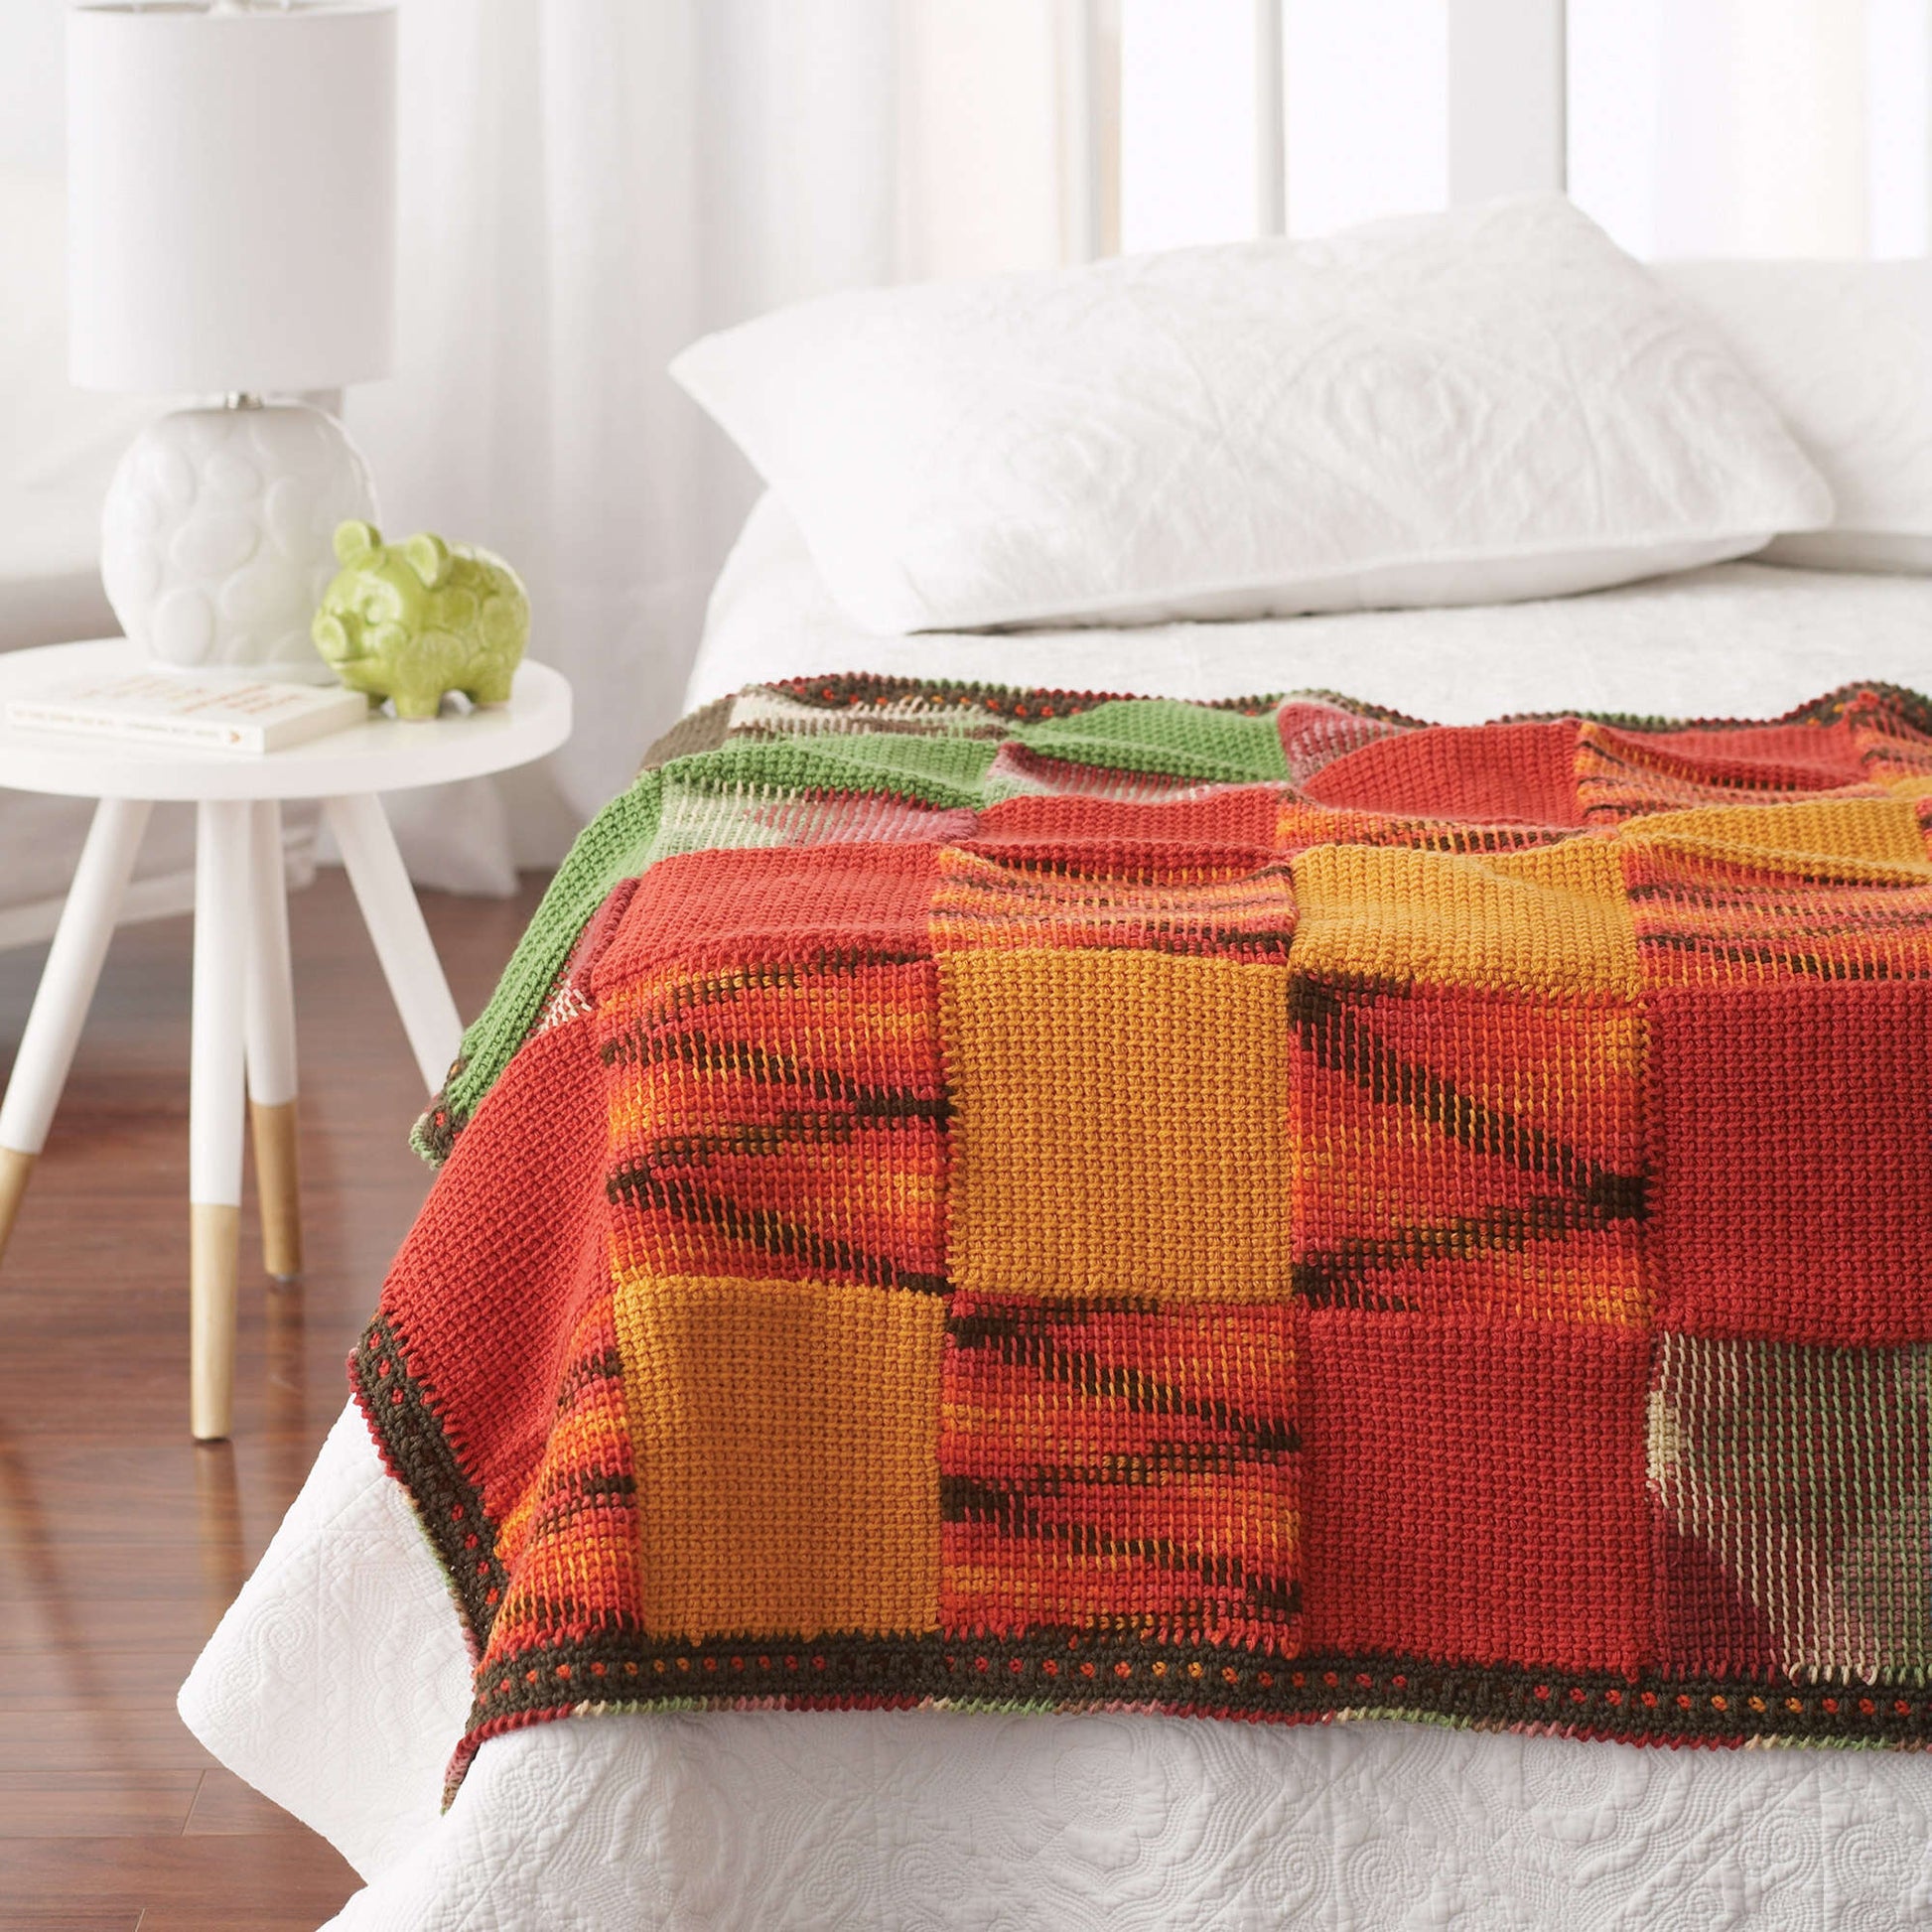 Free Bernat Woven Blocks Crochet Blanket Pattern